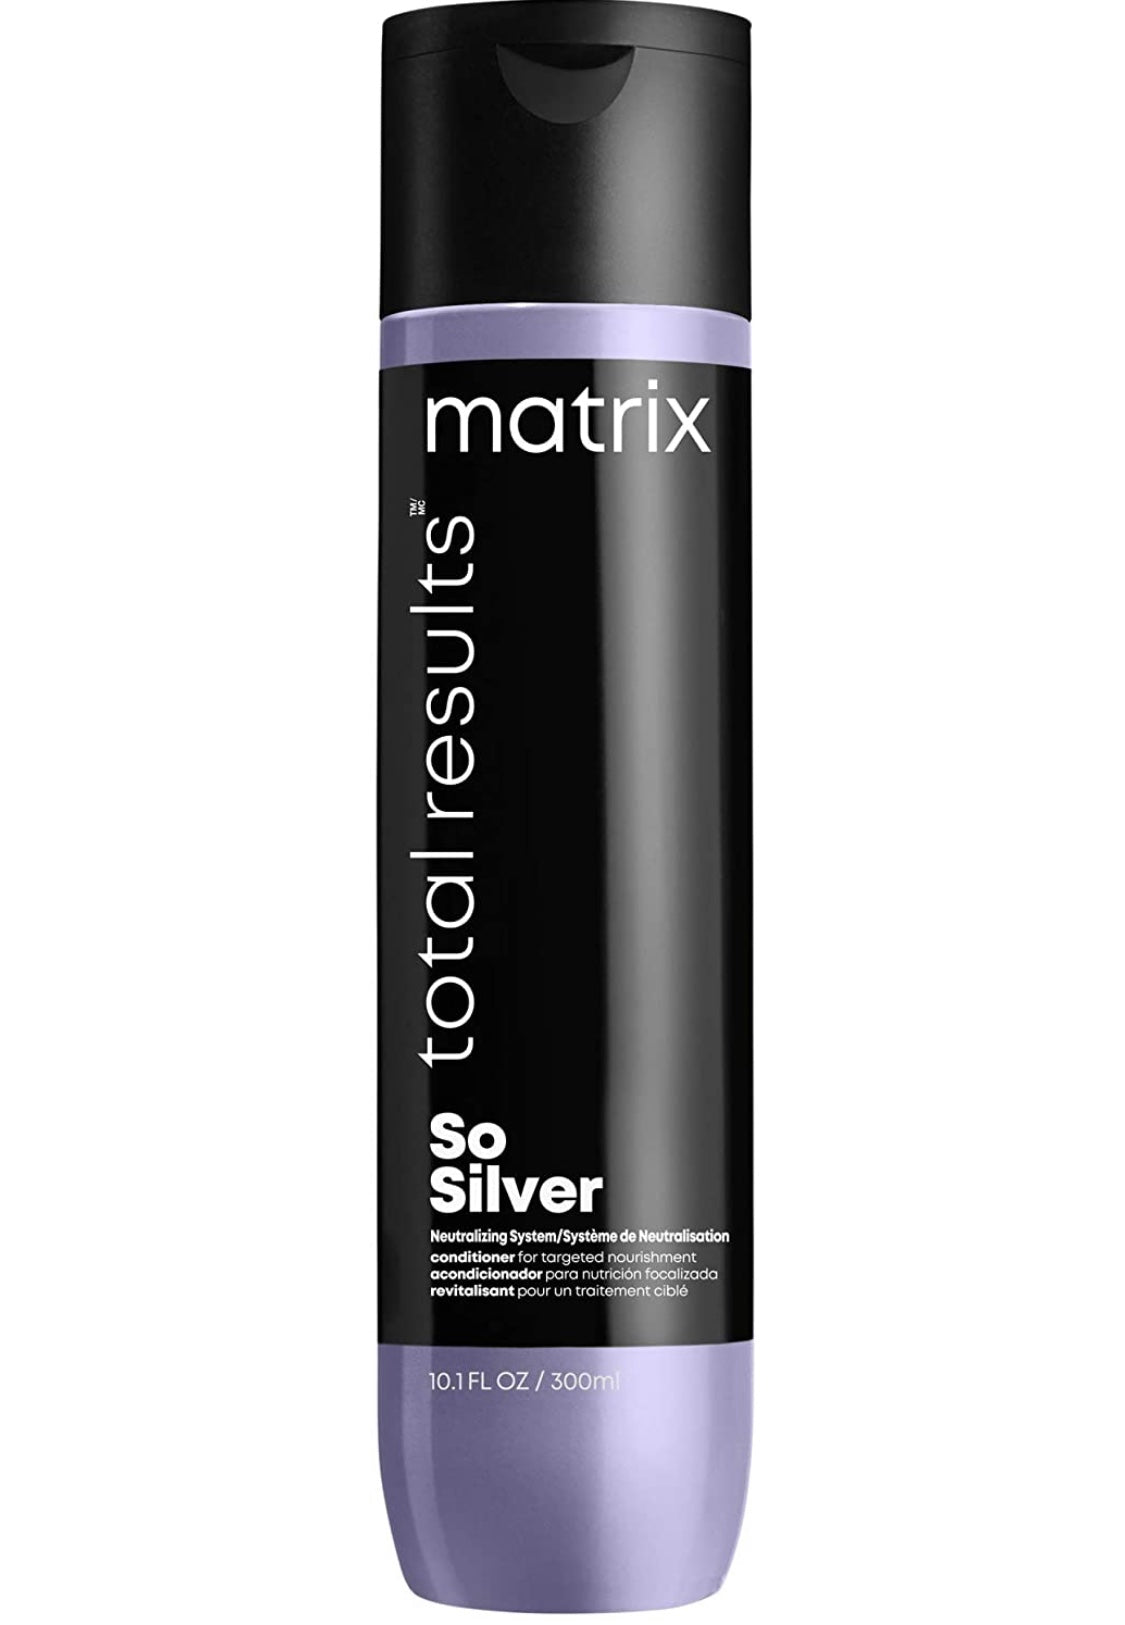 Matrix - So silver conditioner 10.1 fl. oz./ 300 ml